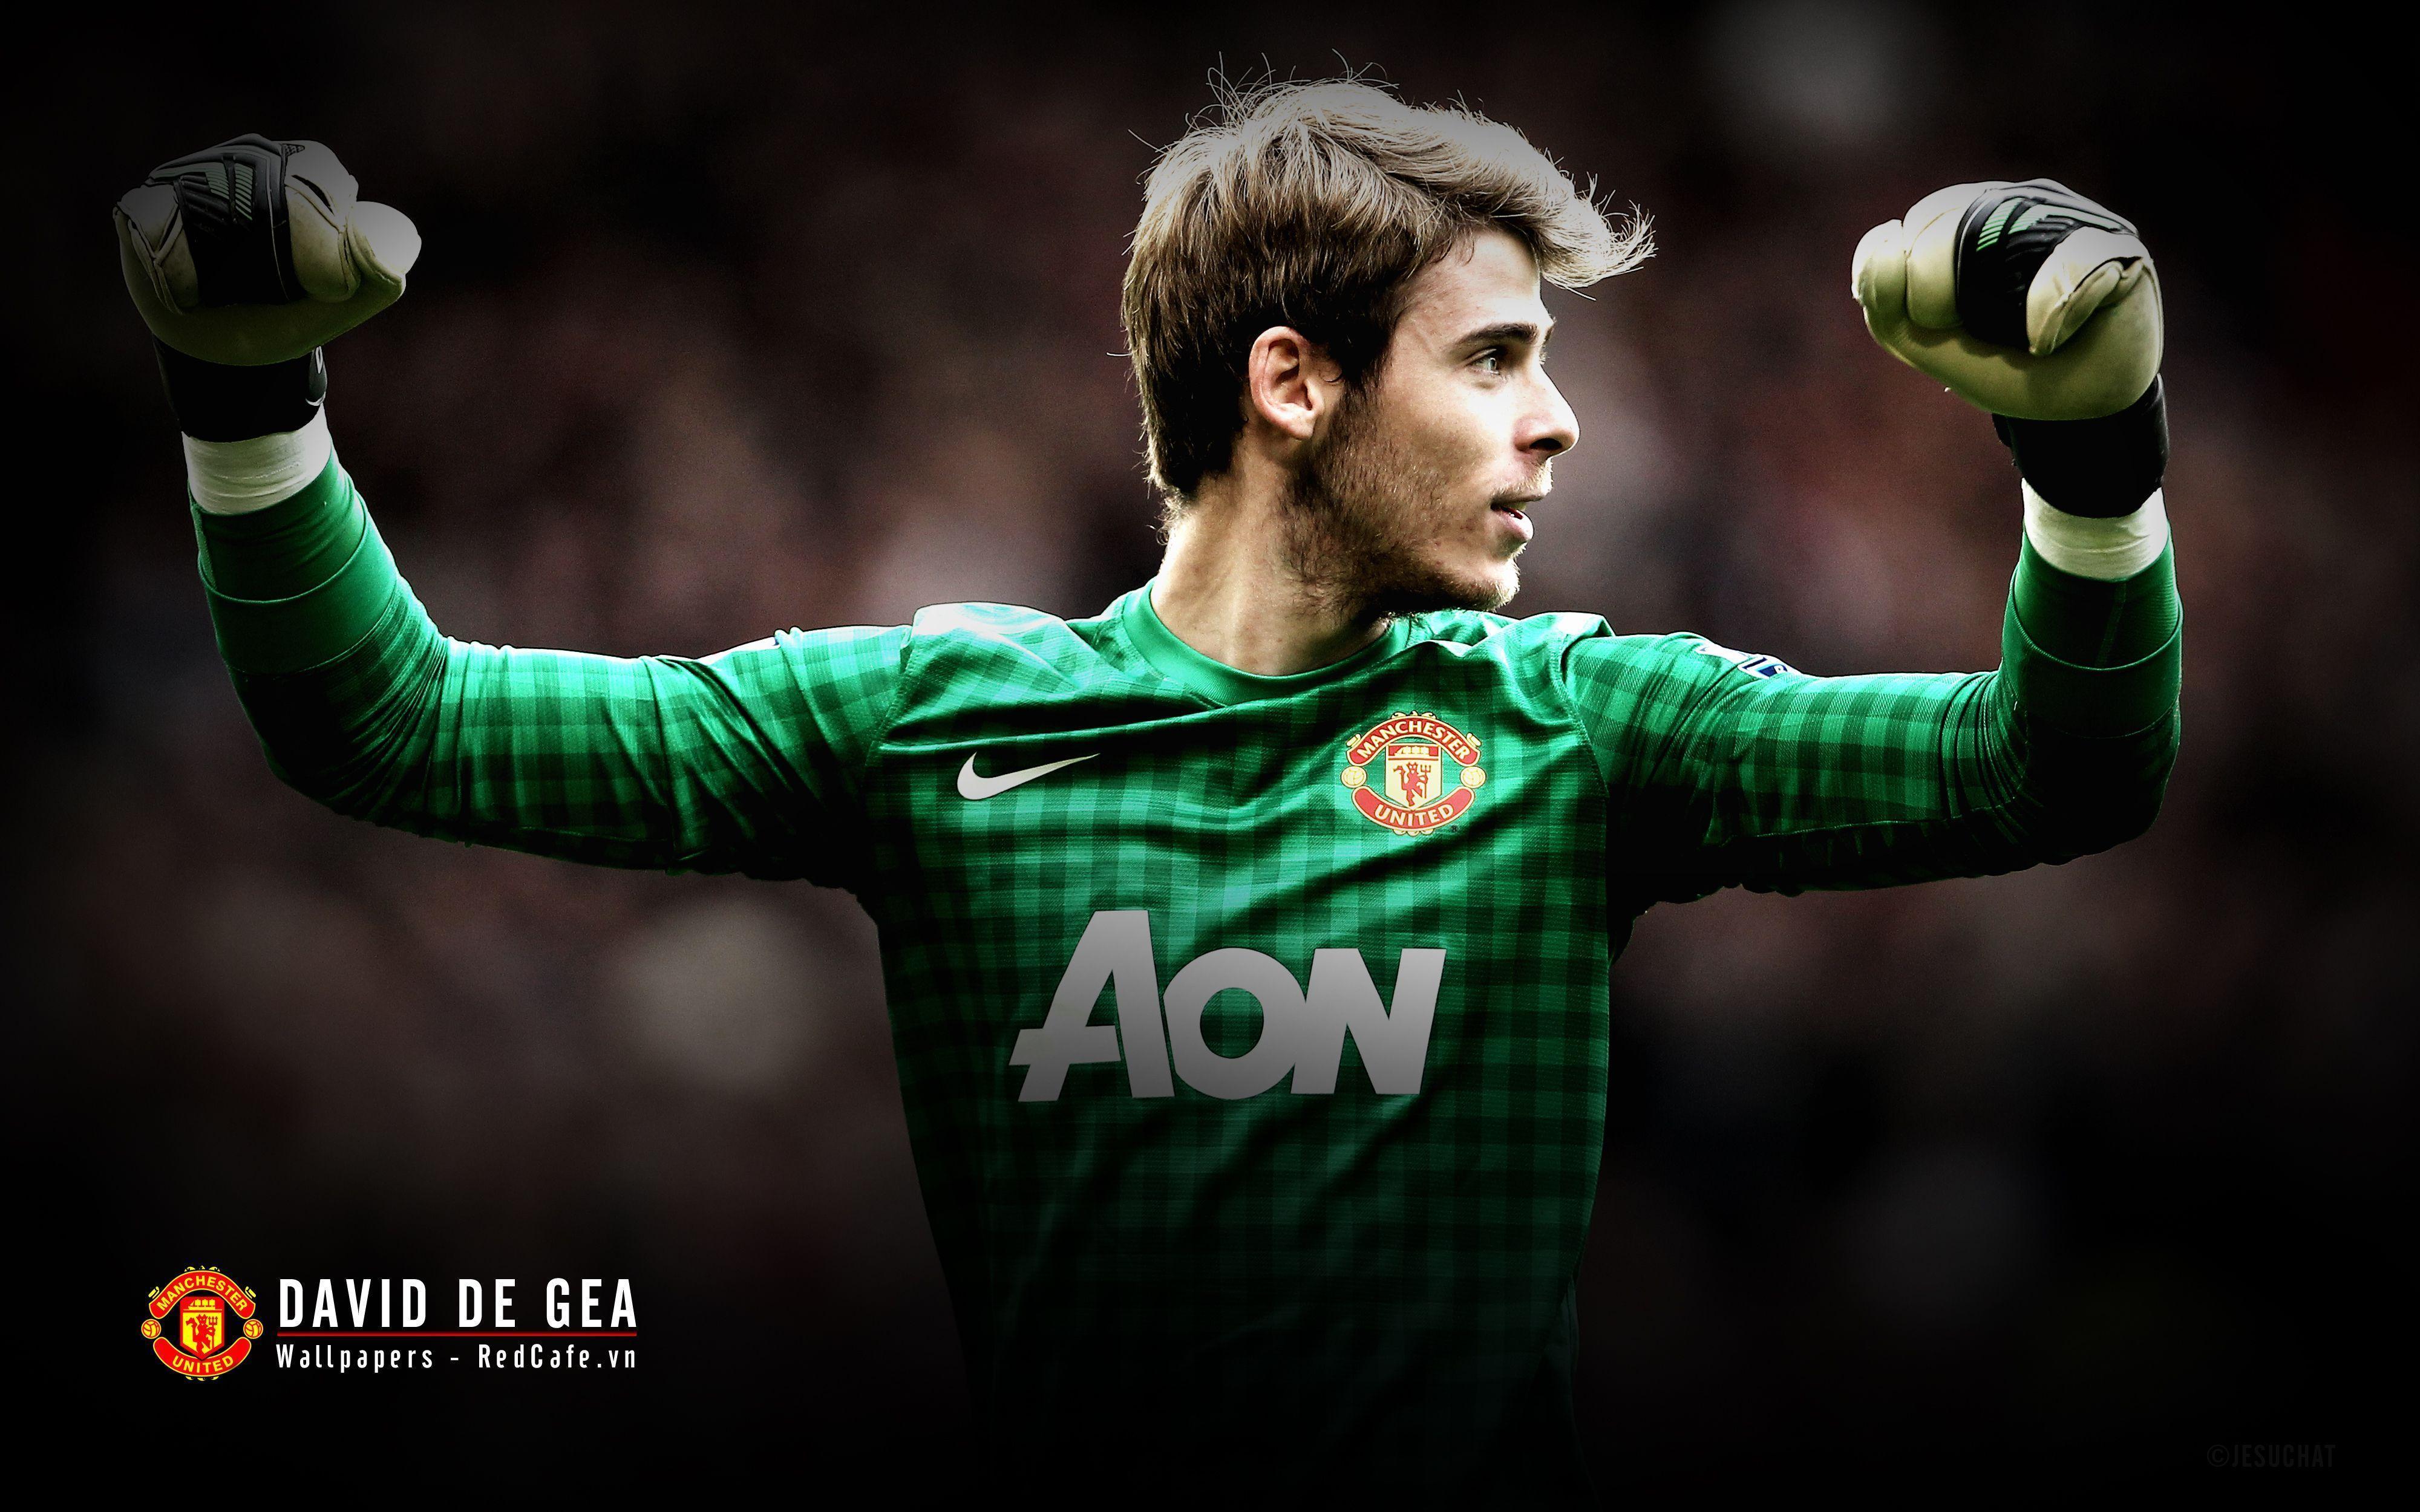 The goalkeeper of Manchester United David De Gea wallpaper